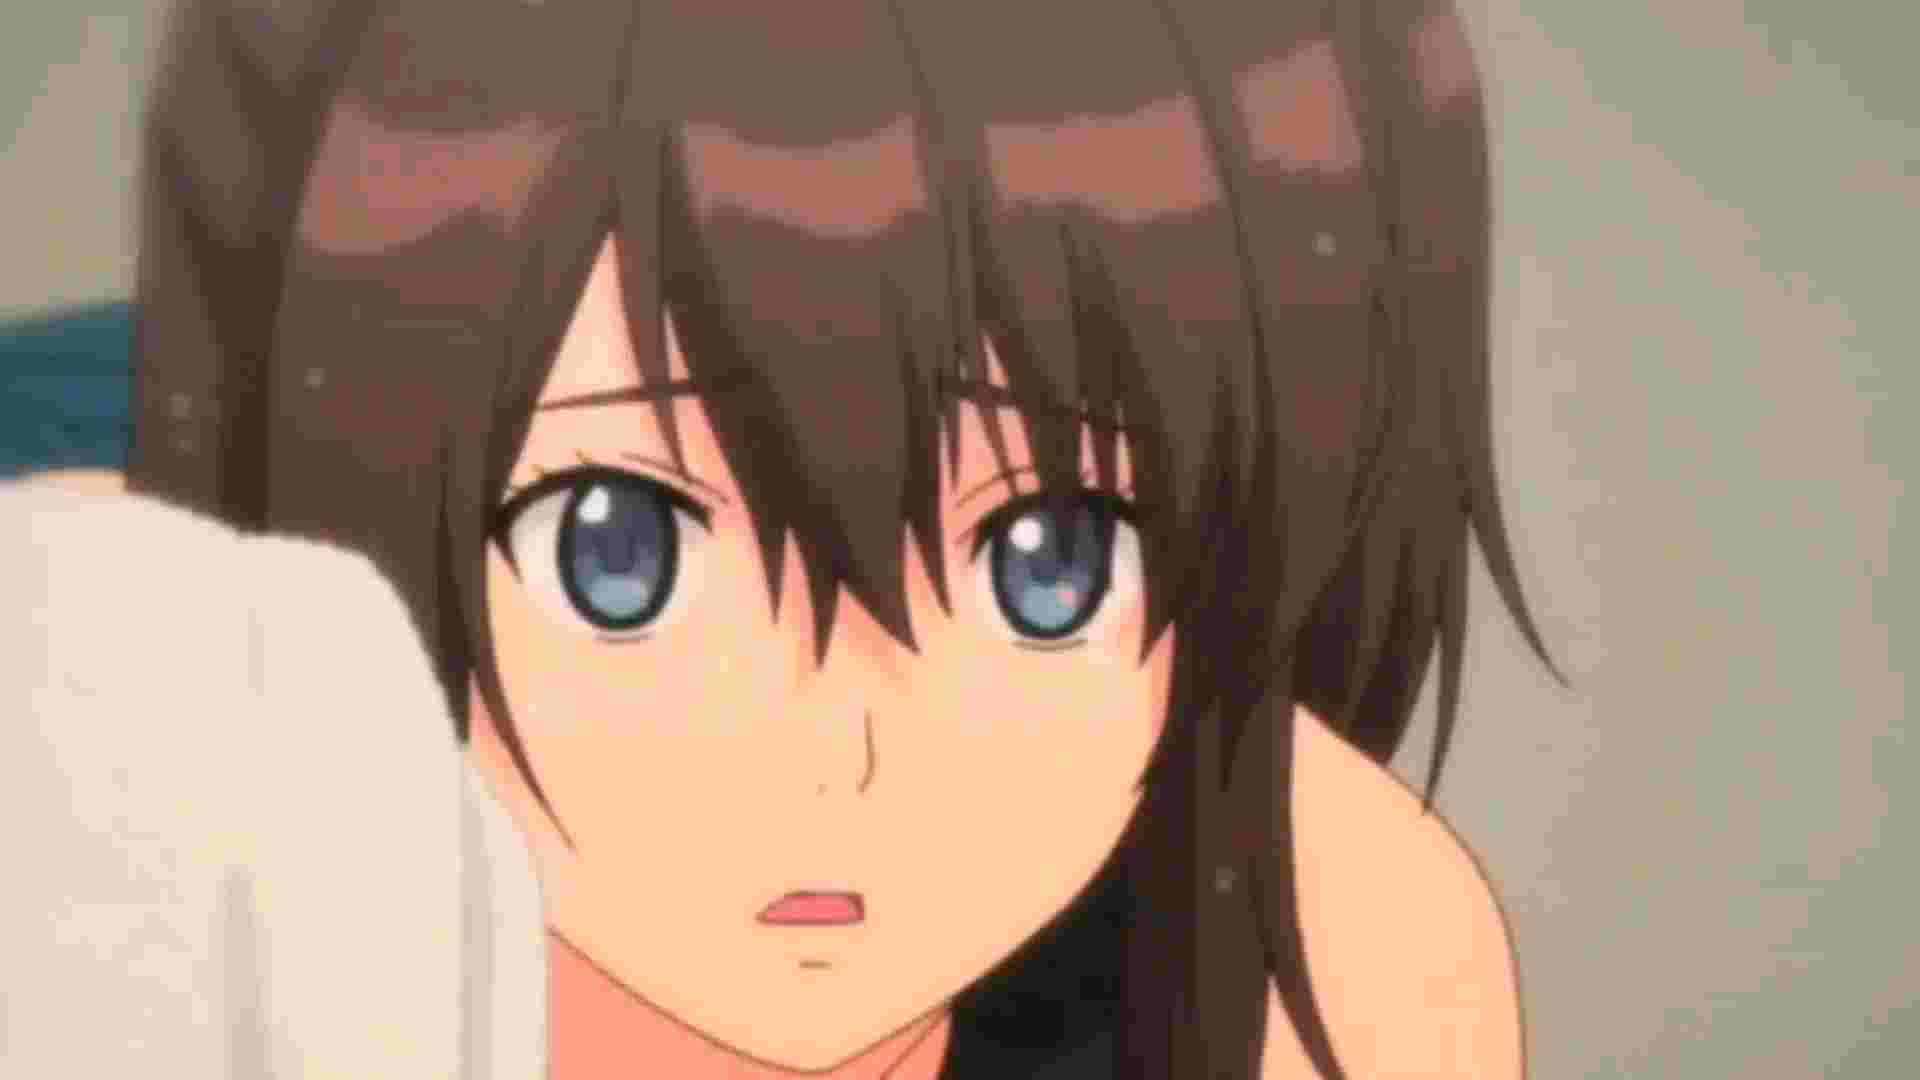 Ảnh Anime màu đen  Hình nền Anime đen tối màu cực đẹp  Anime background  Cute anime wallpaper Anime wallpaper